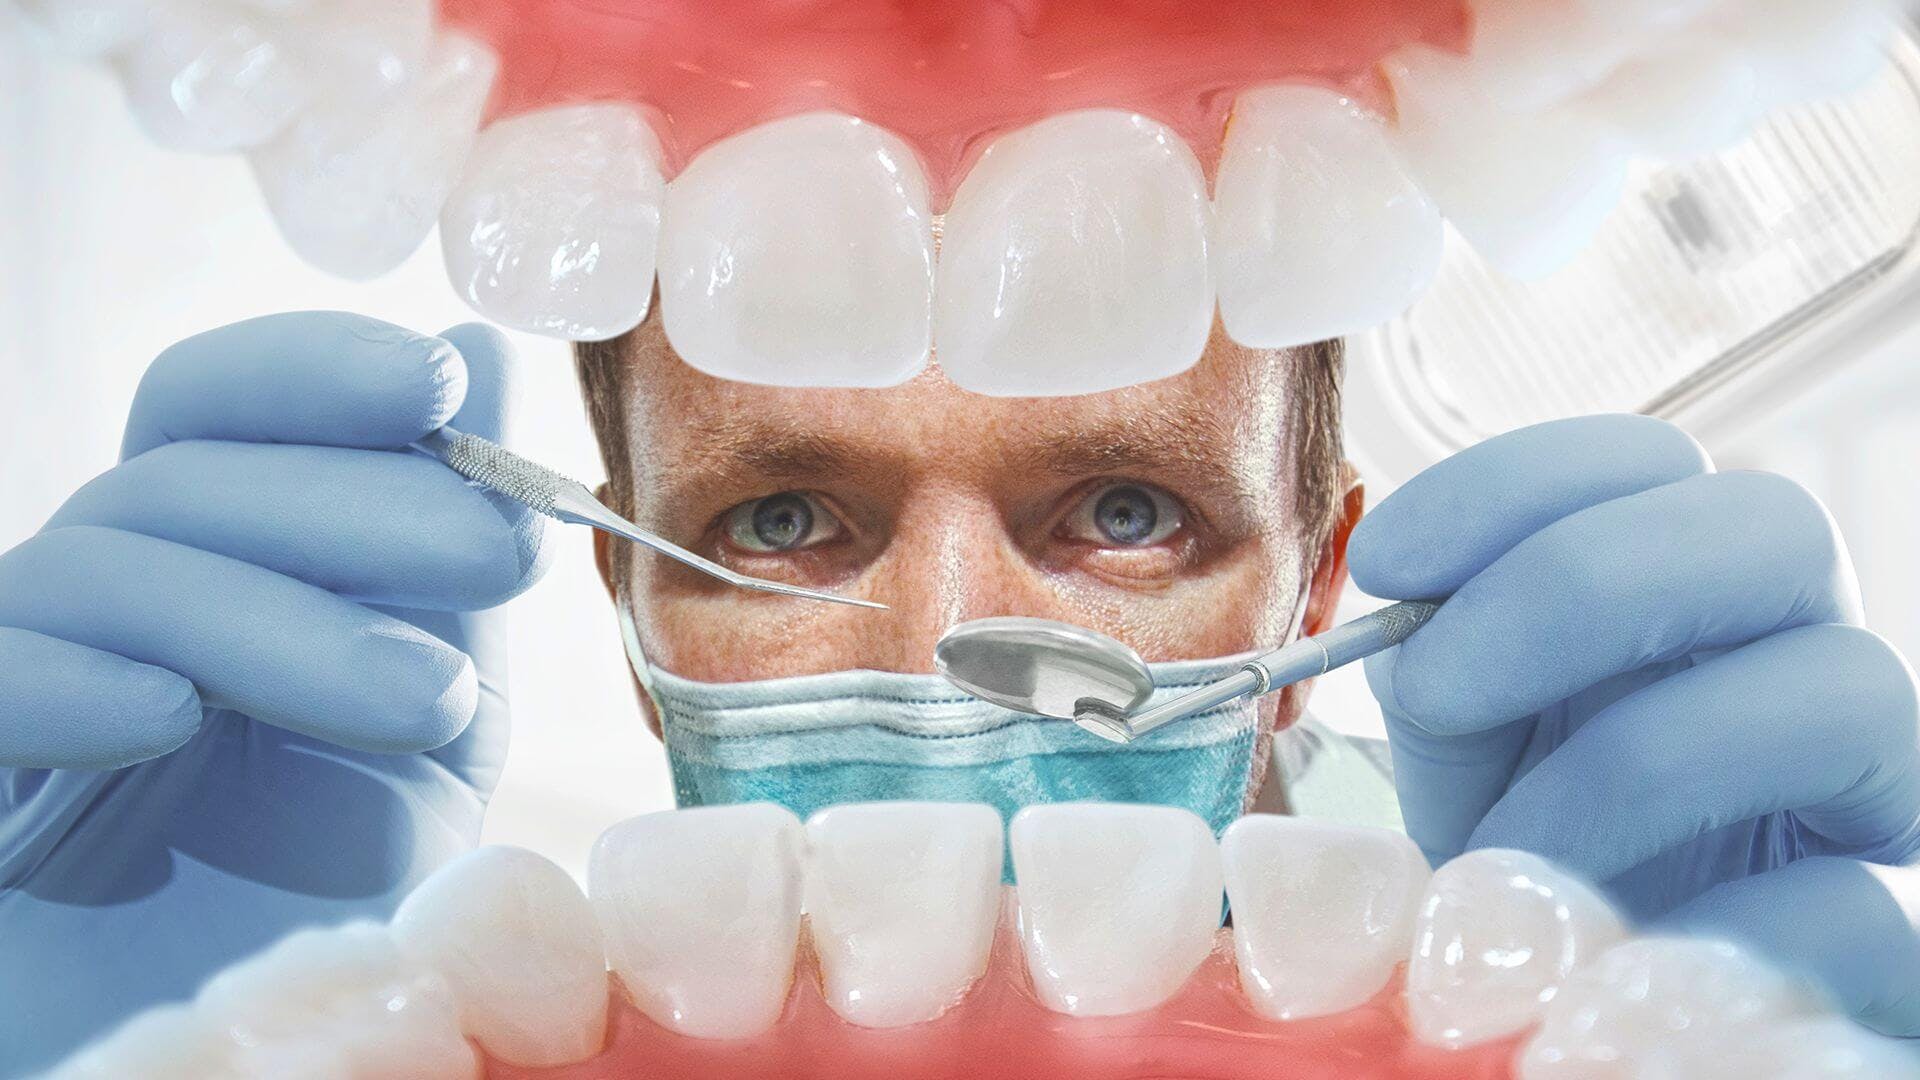 Dyfishimi i çmimeve për shërbimet dentare, Ministria e Shëndetësisë çon në gjykatë vendimin për të bllokuar urdhrin